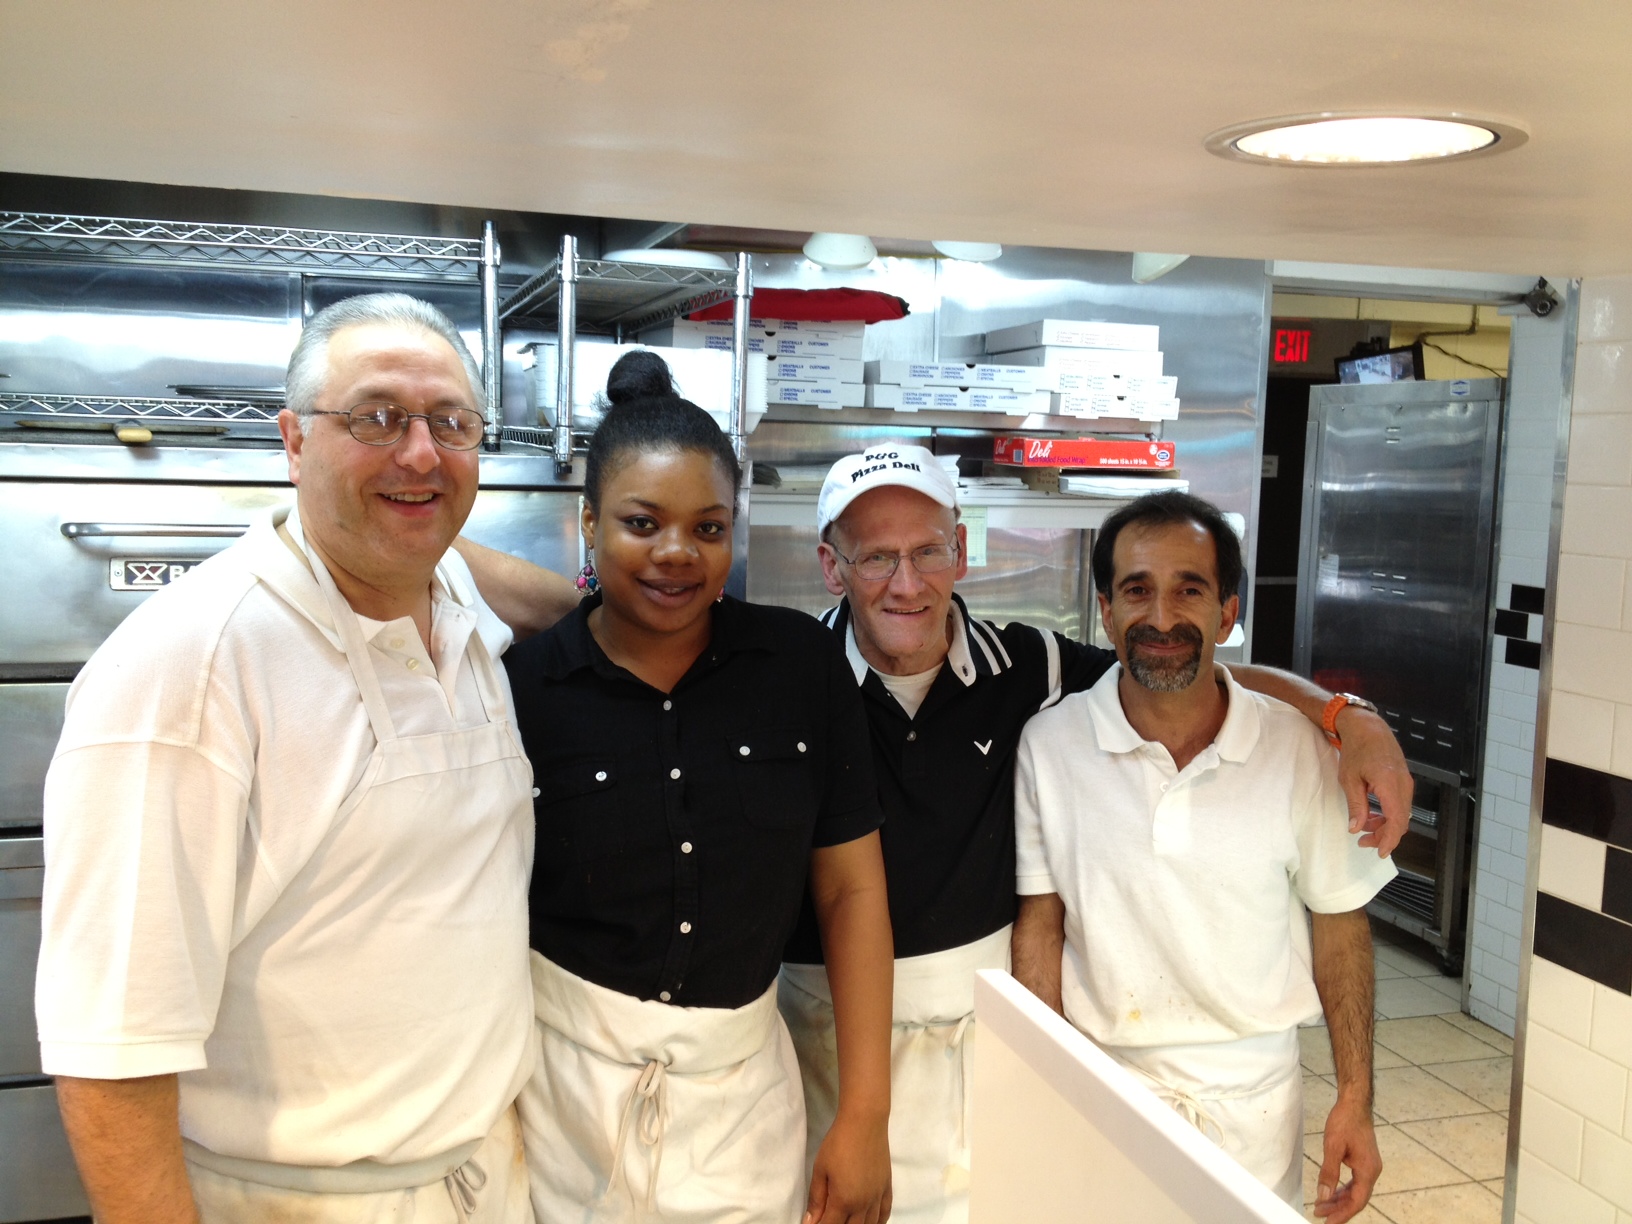 The Staff of P&G Deli and Pizza, Rich Sada, Julecia Southerland, Thomas Smith, Mario Ayvaza